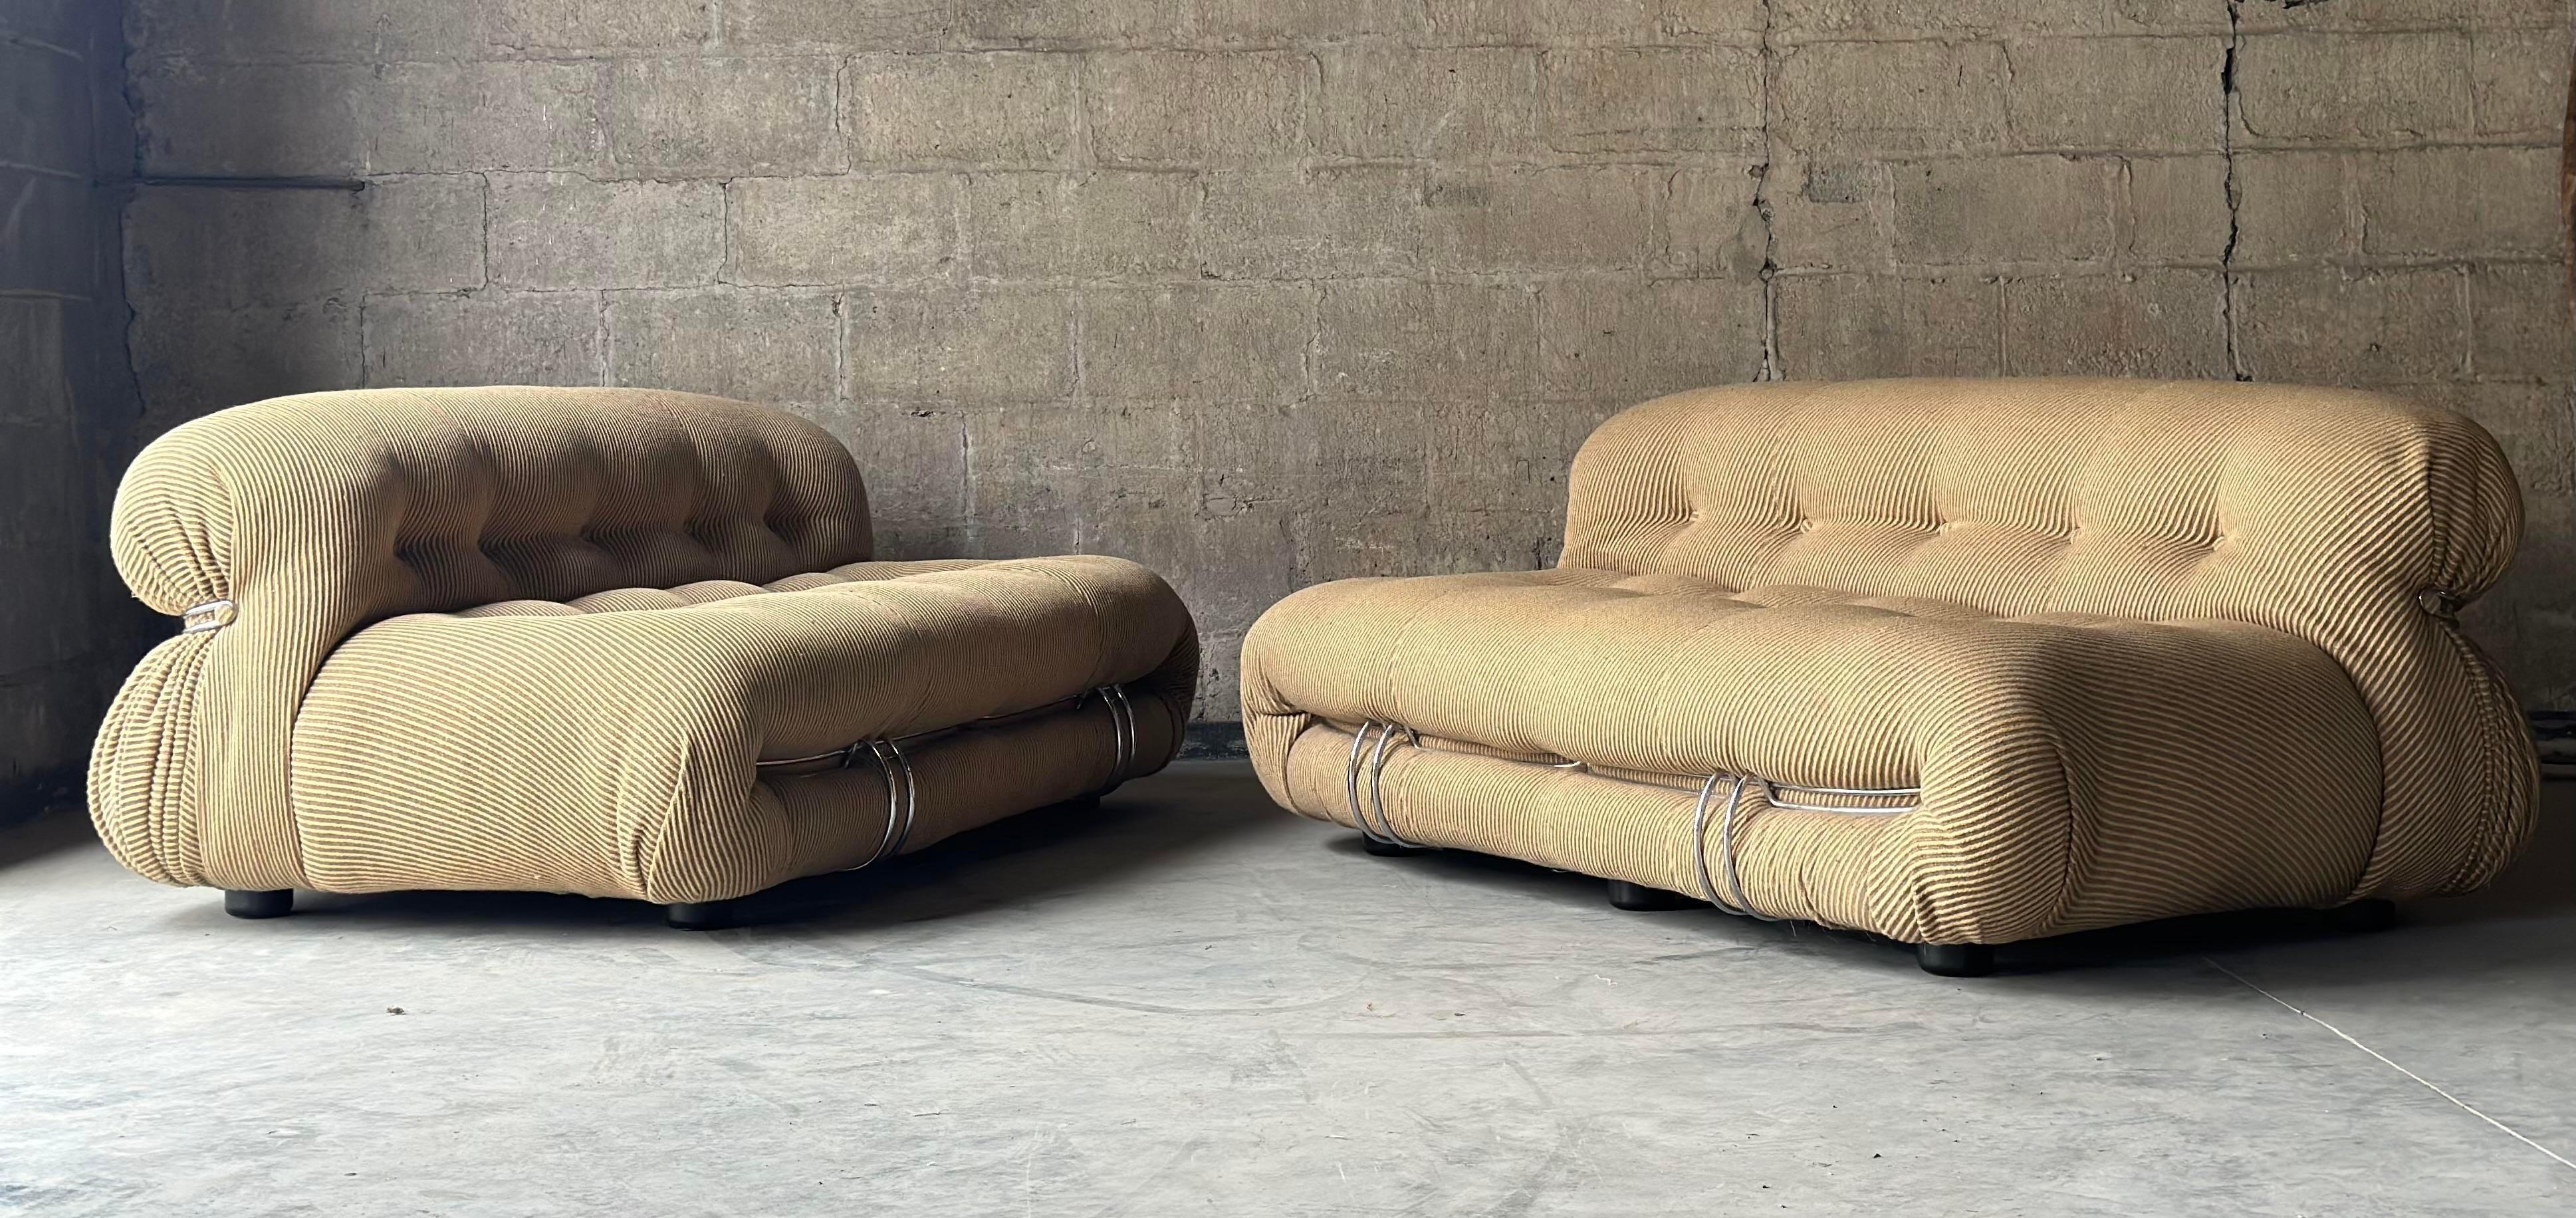 Rehaussez votre espace de vie avec cet ensemble italien modèle 944 'Soriana', composé de deux canapés assortis et d'un fauteuil d'appoint. 

Conçue par Afra et Tobia Scarpa pour Cassina, dans sa sellerie d'origine en laine rayée beige et crème, dans